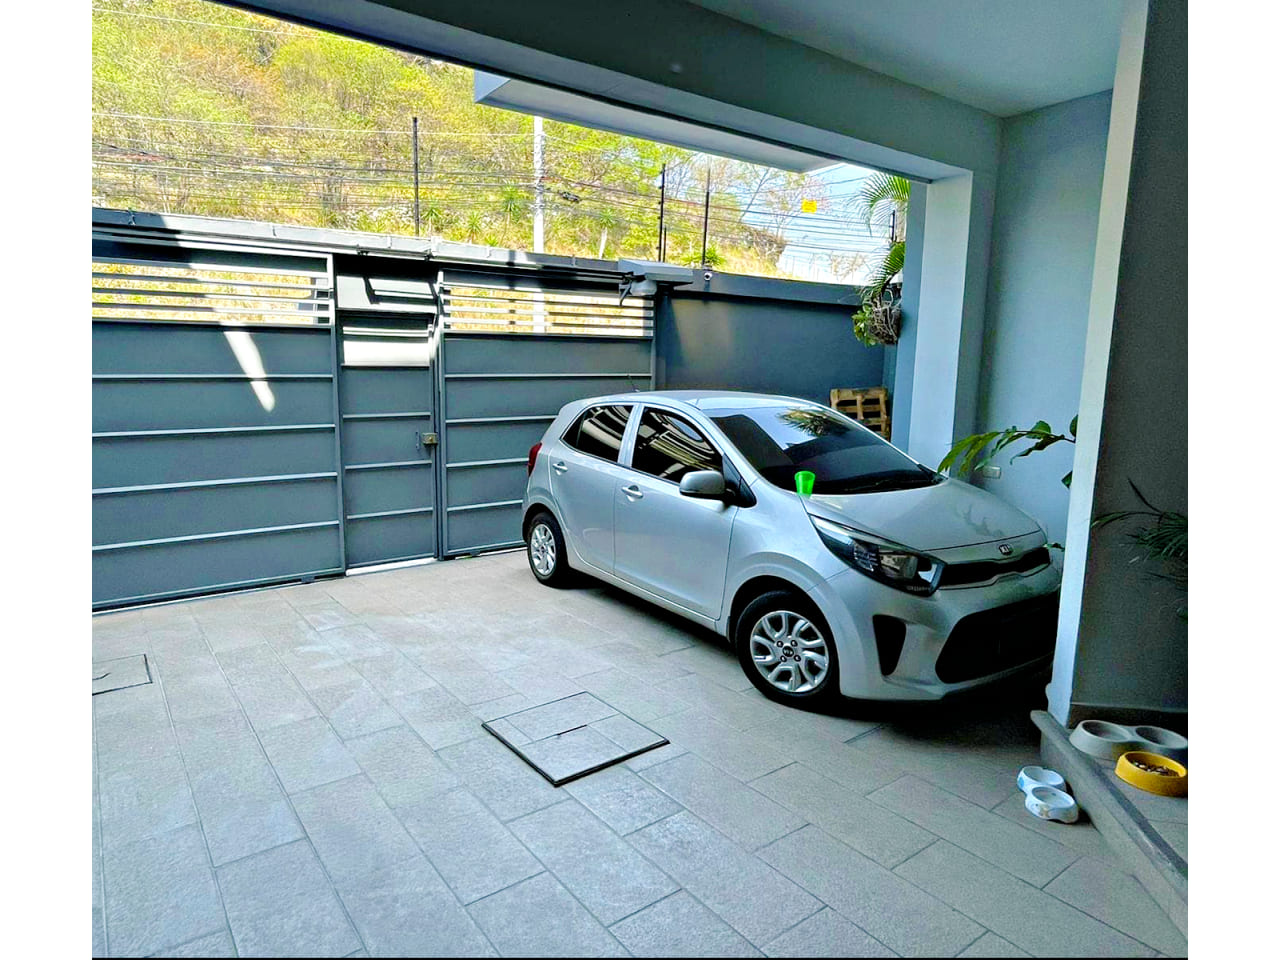 Amplio garaje para dos vehículos, ubicado en la parte frontal de la casa, con portones de color gris un poco oscuros pero que dan la sensación de entrar a una casa moderna.